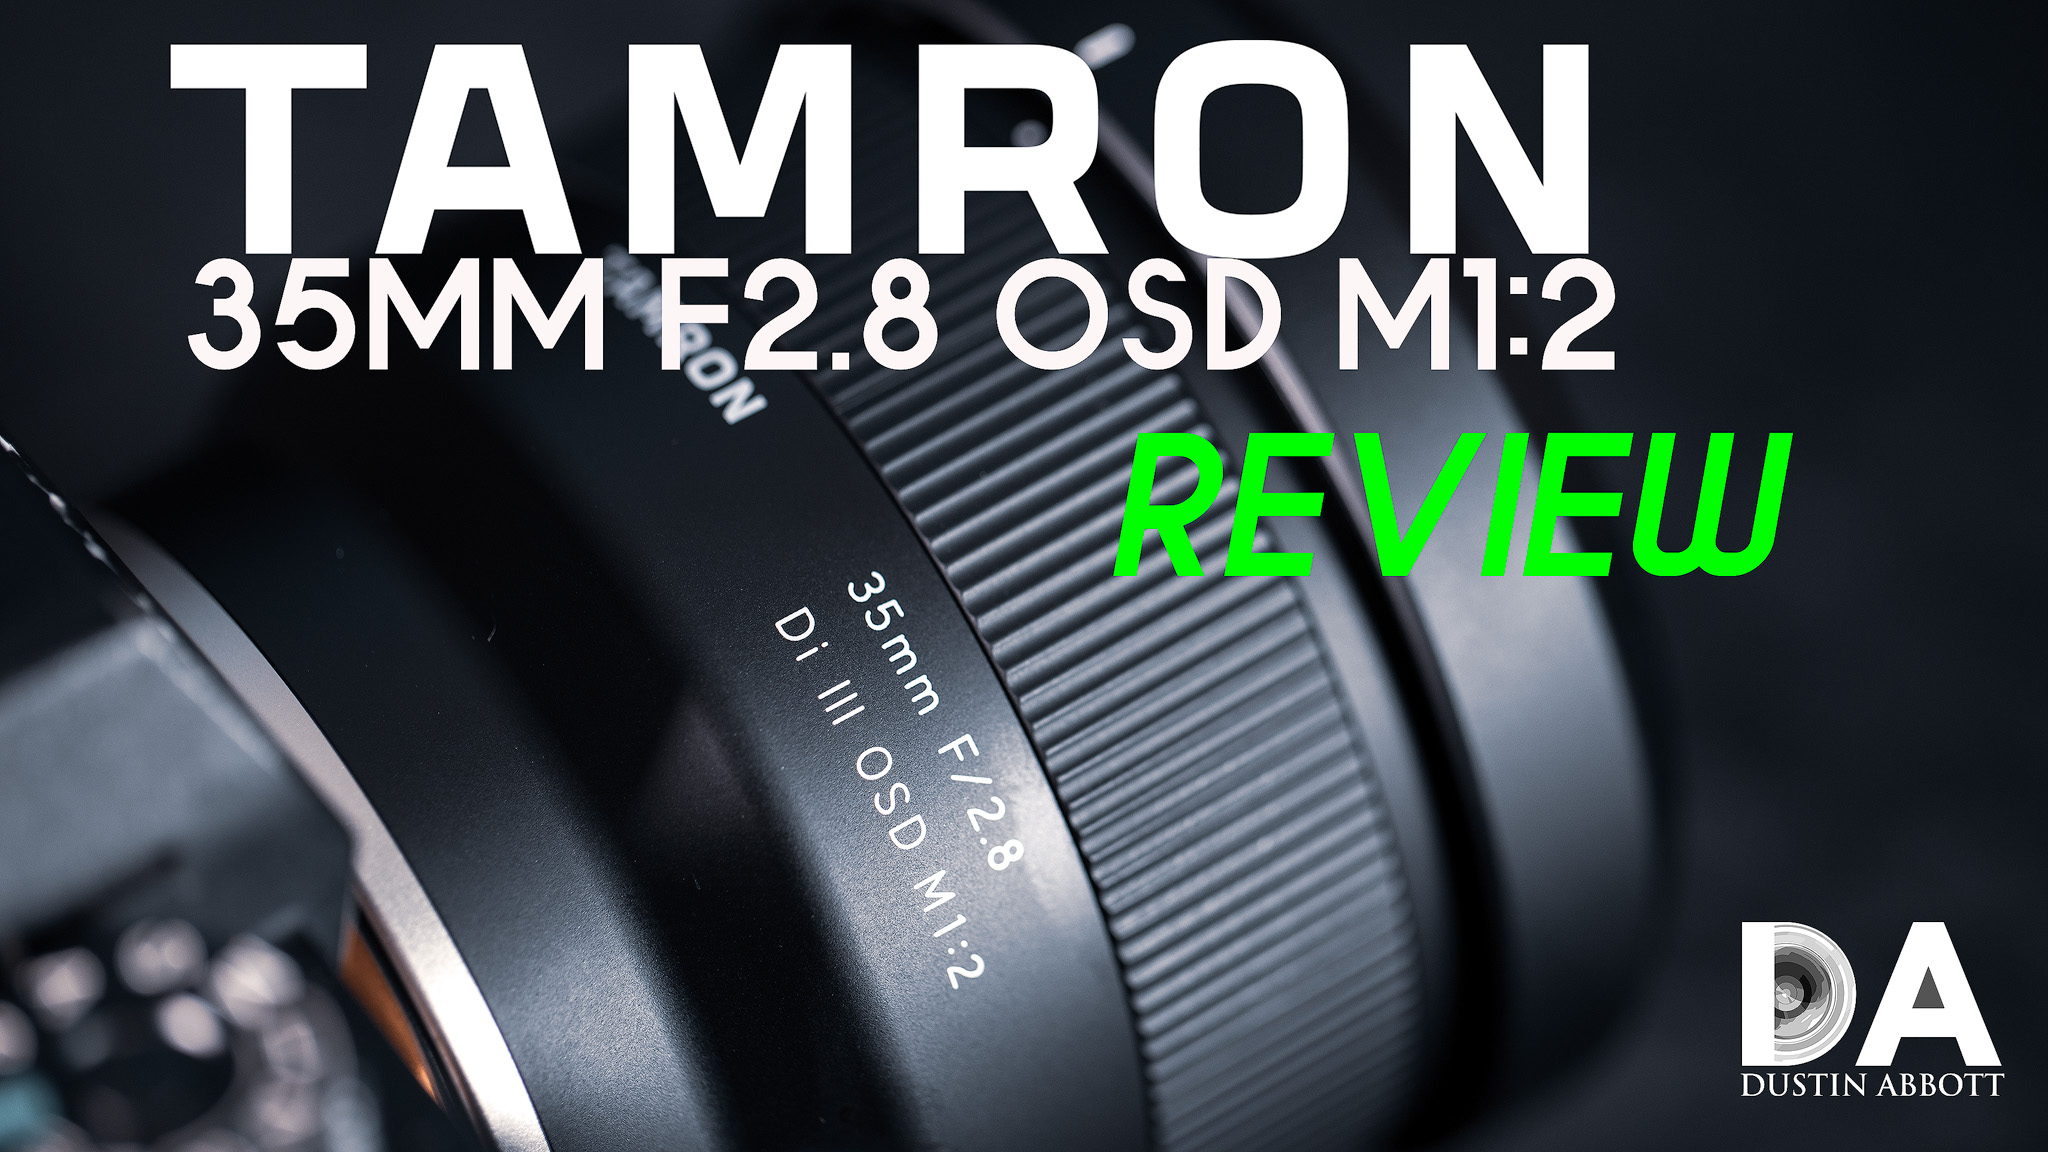 Tamron 35mm F2.8 OSD M1:2 Review (F053) - DustinAbbott.net